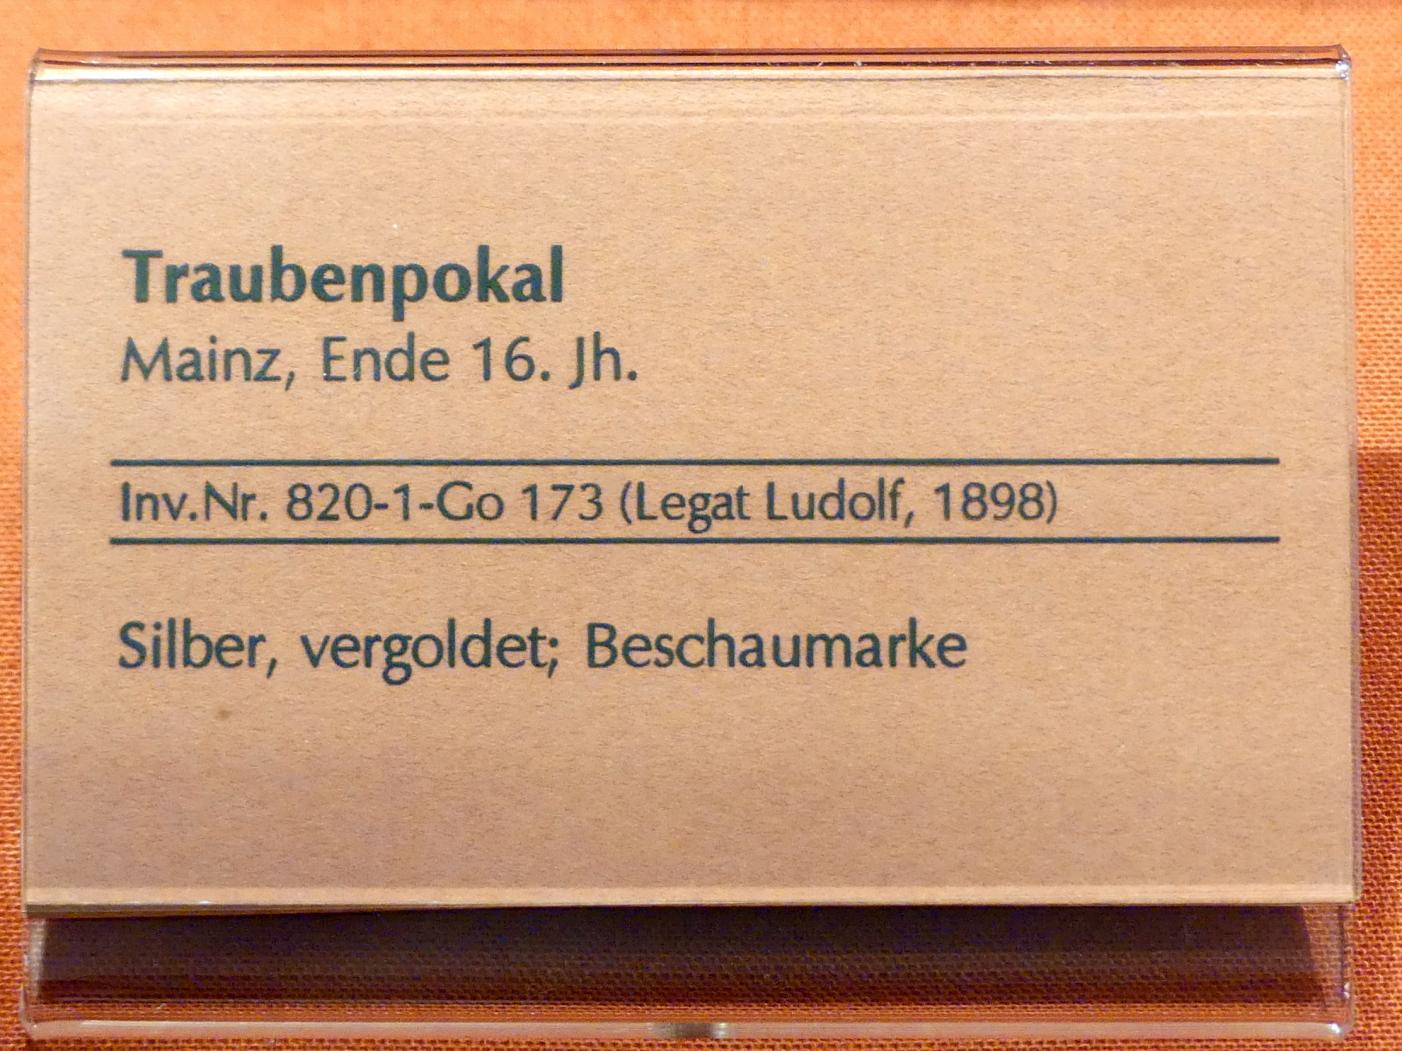 Traubenpokal, Linz, Oberösterreichisches Landesmuseum, Renaissance und Manierismus, Ende 16. Jhd., Bild 2/2